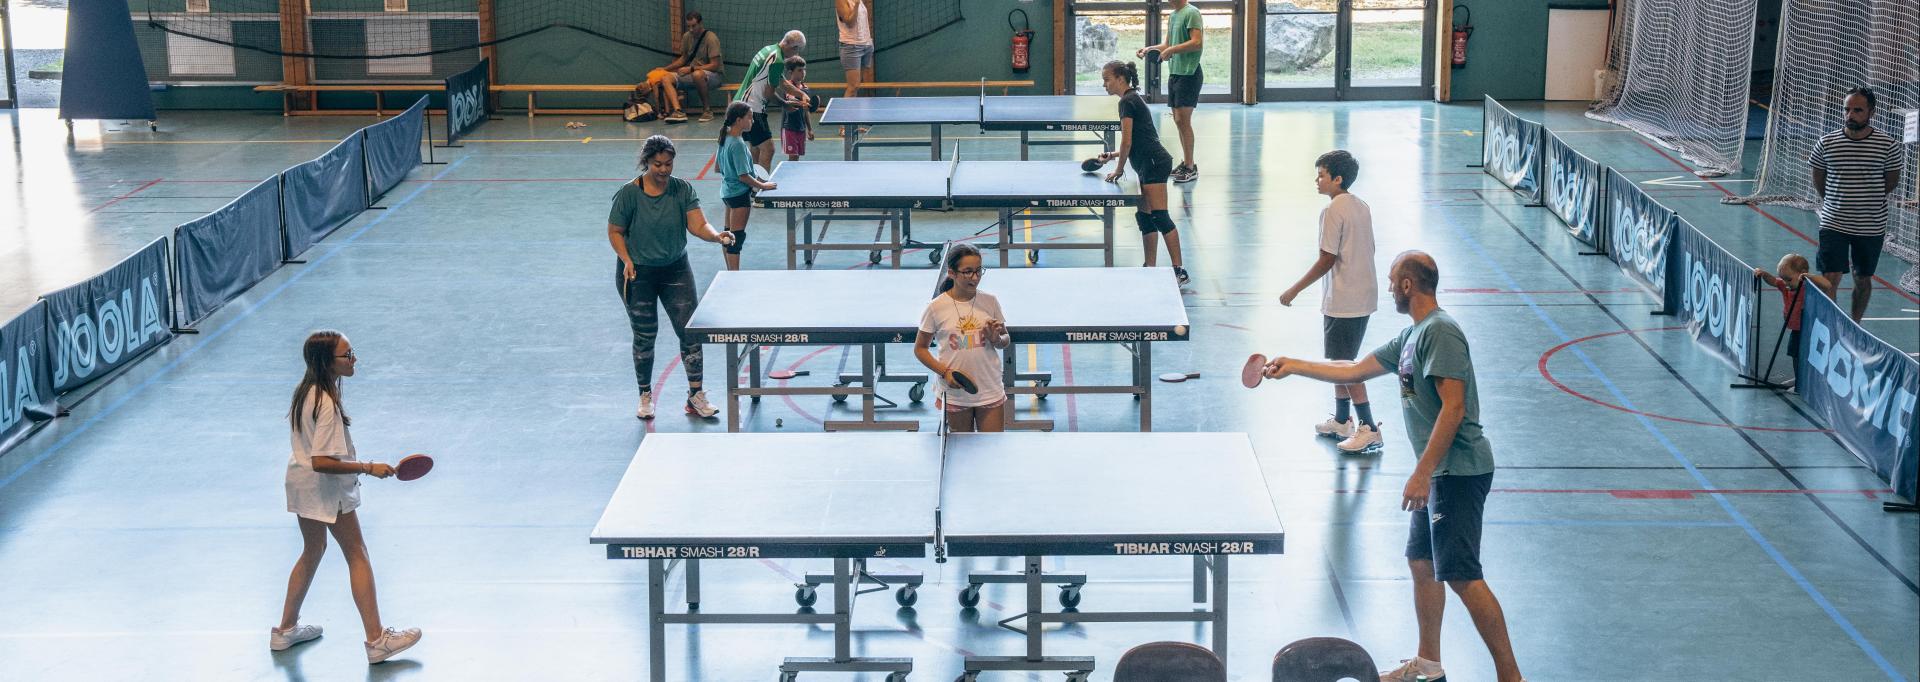 Des enfants en train de jouer au tennis de table